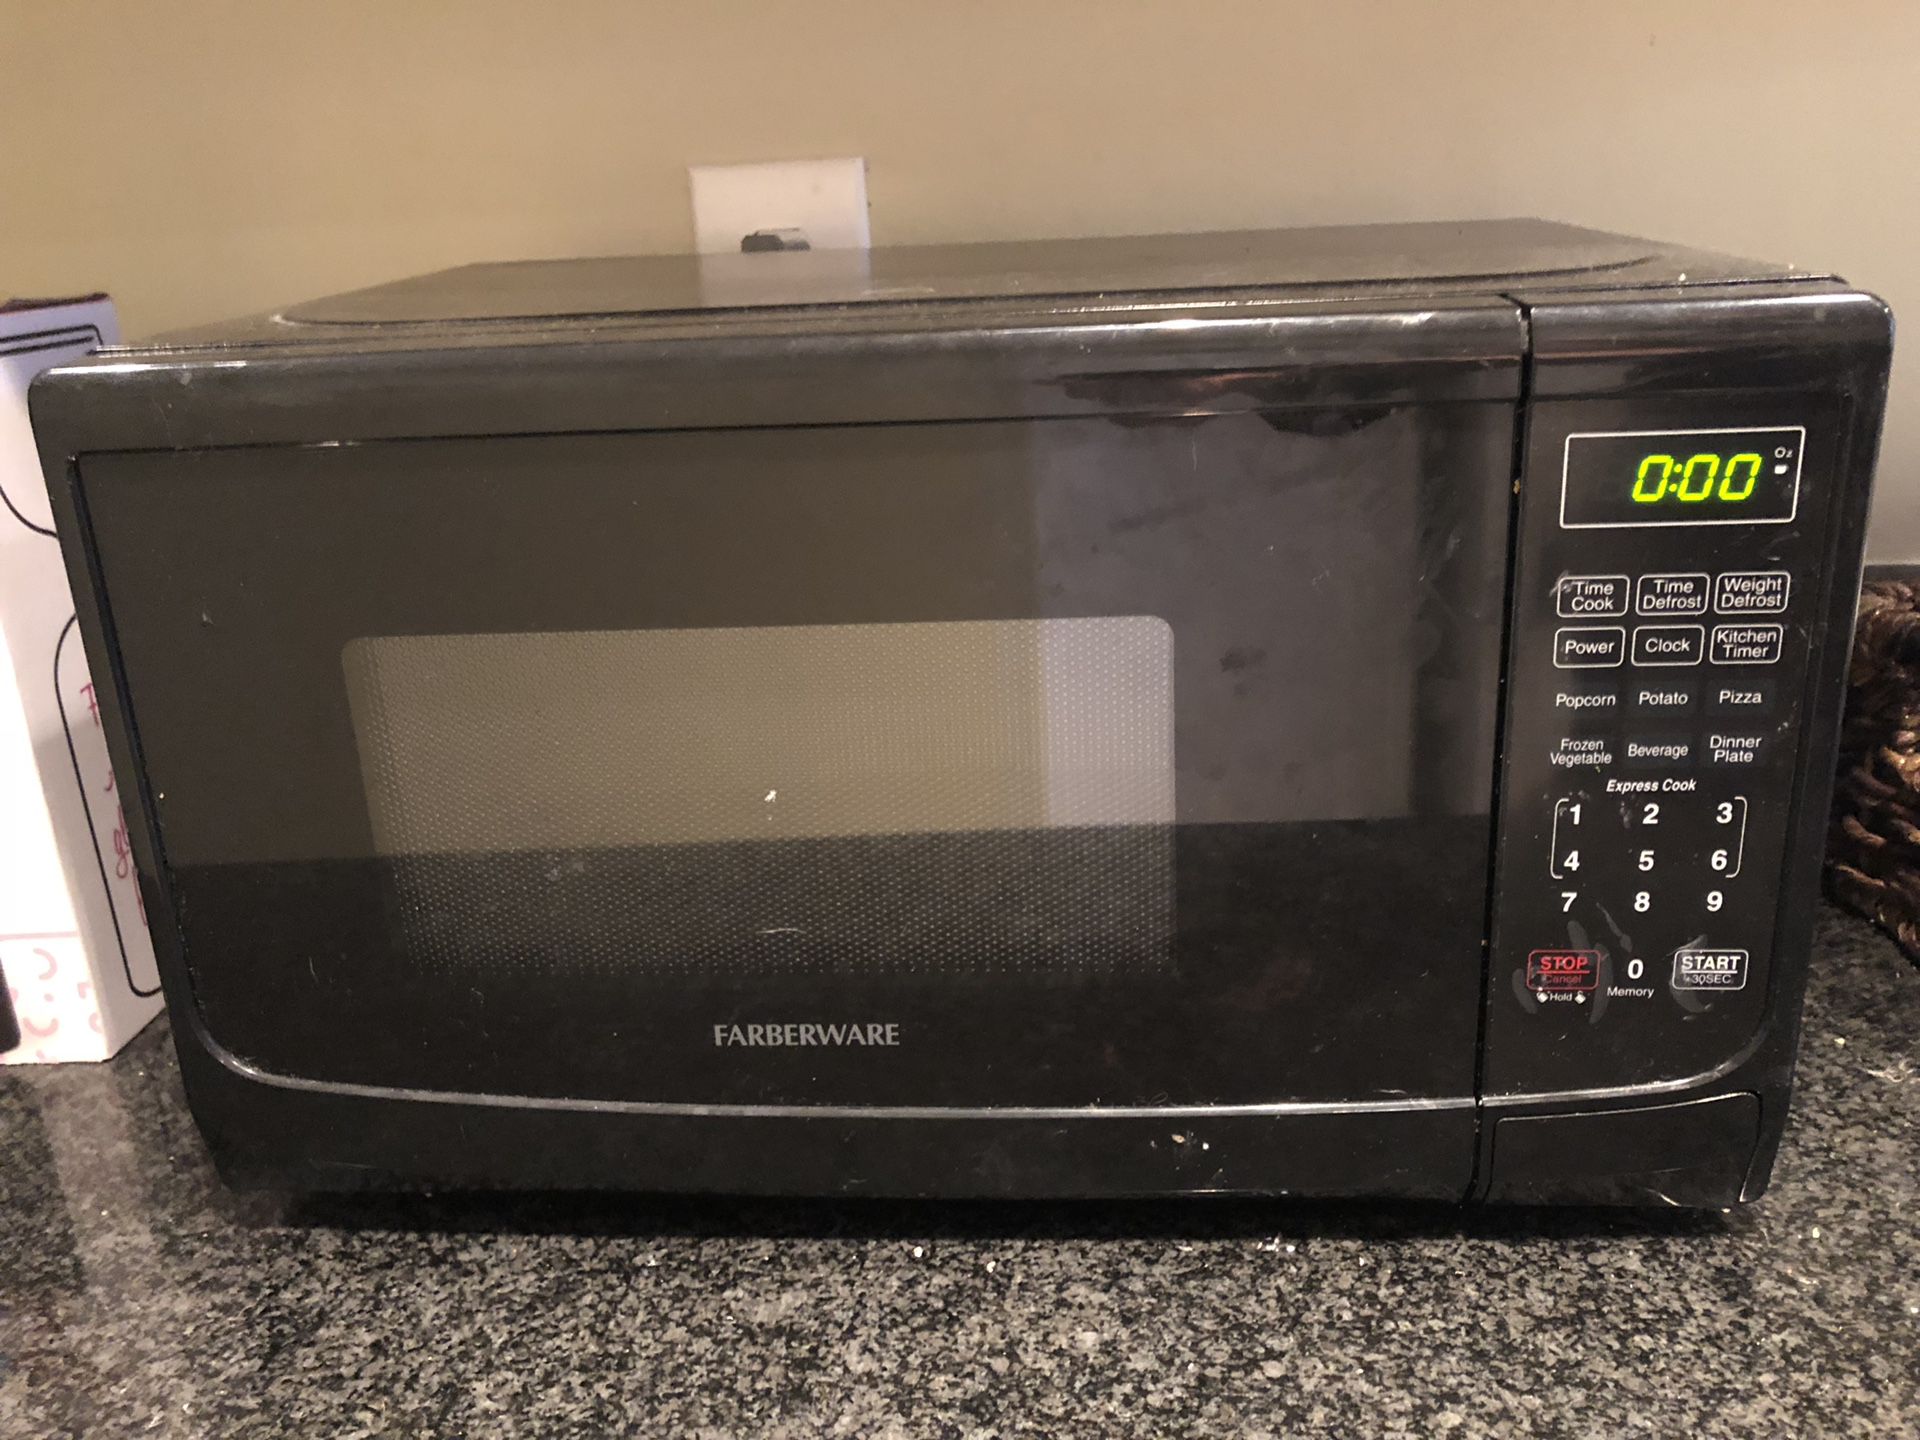 Farberware 700 Watt Microwave